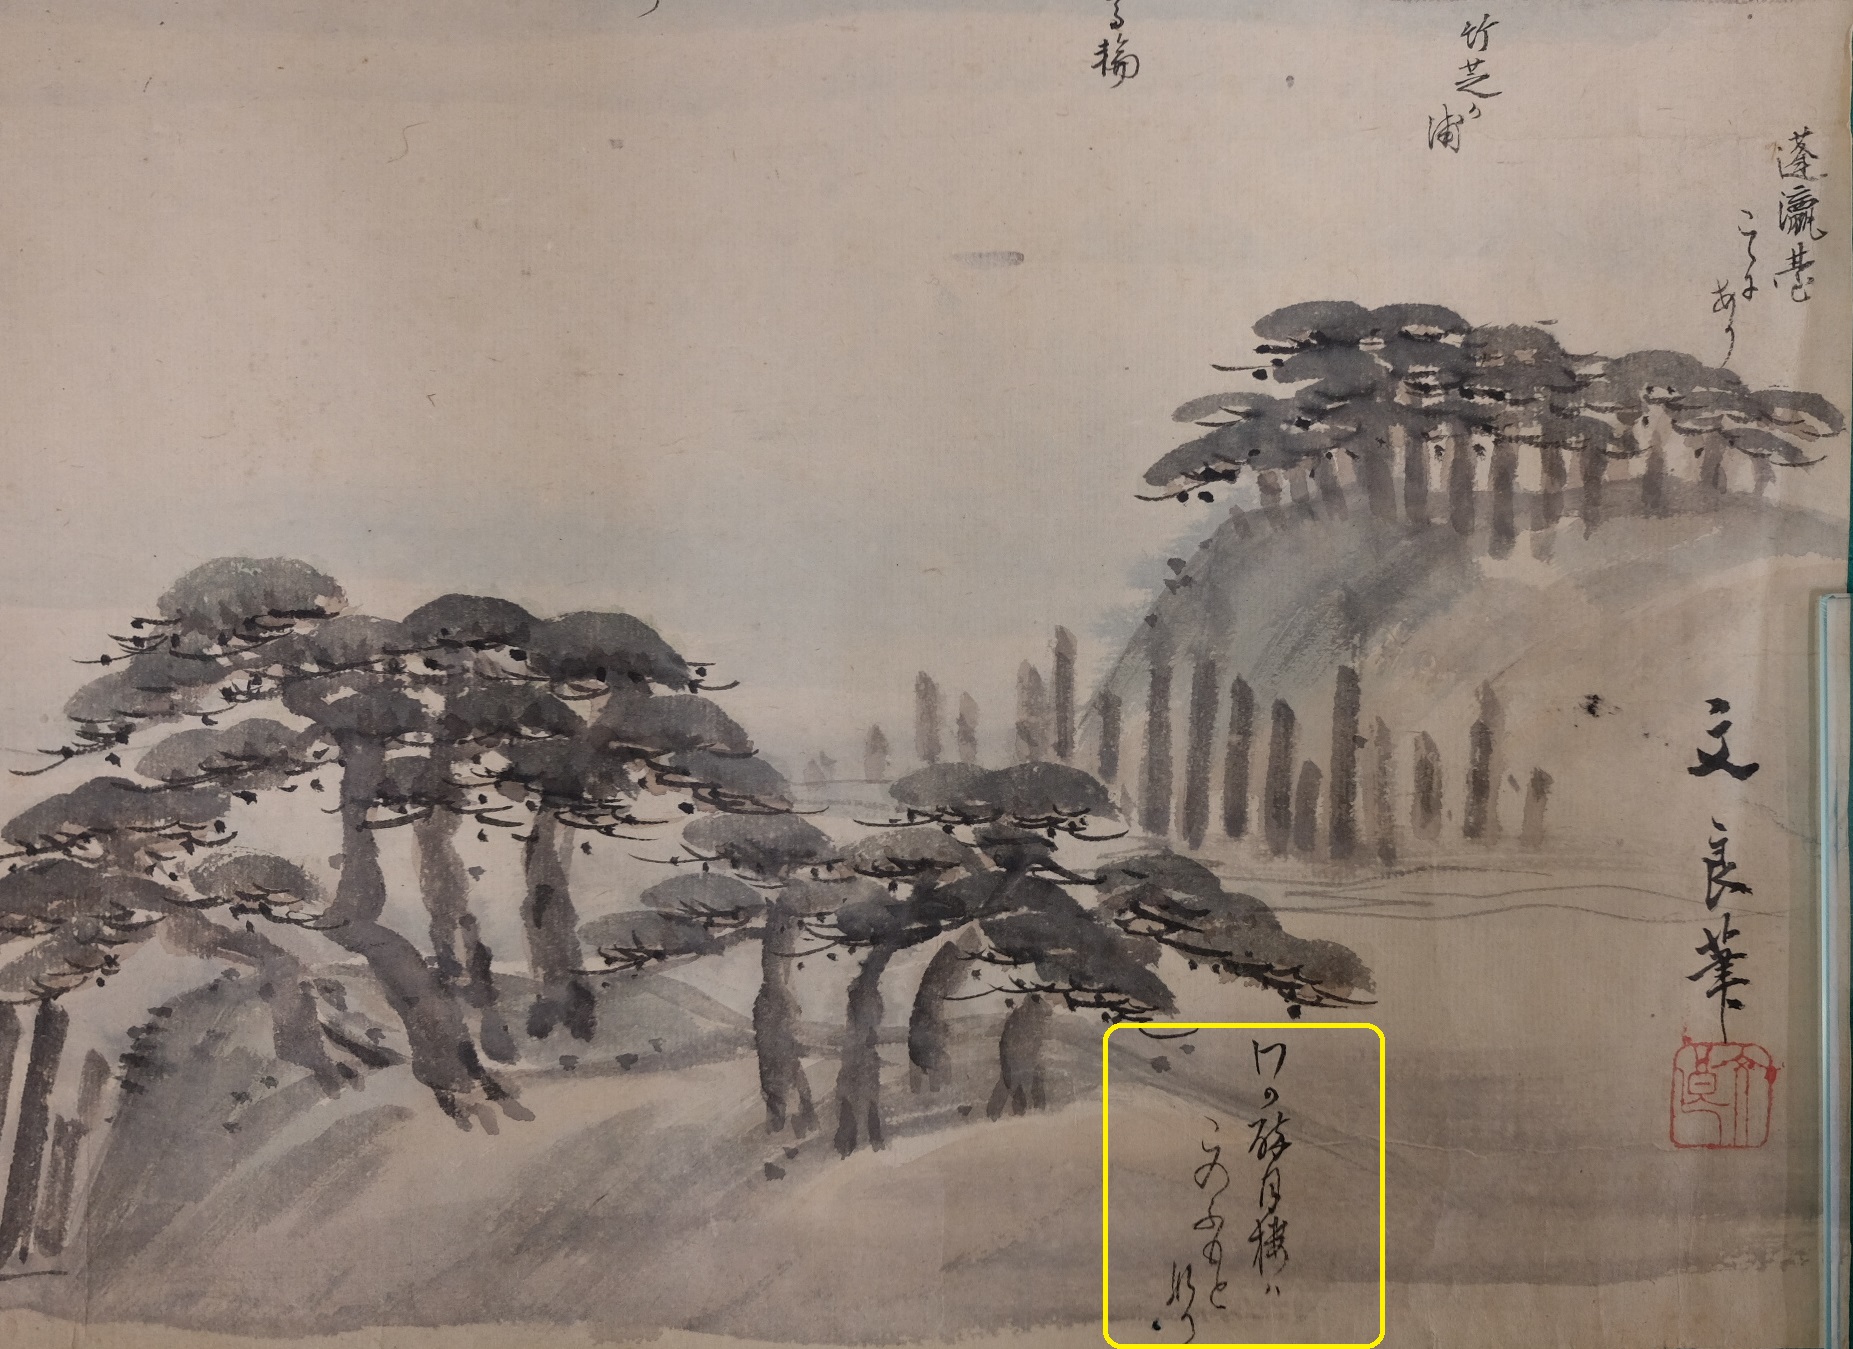 星野文良画「海浜眺望図」酔月楼がある場所について，田内月堂の記述箇所